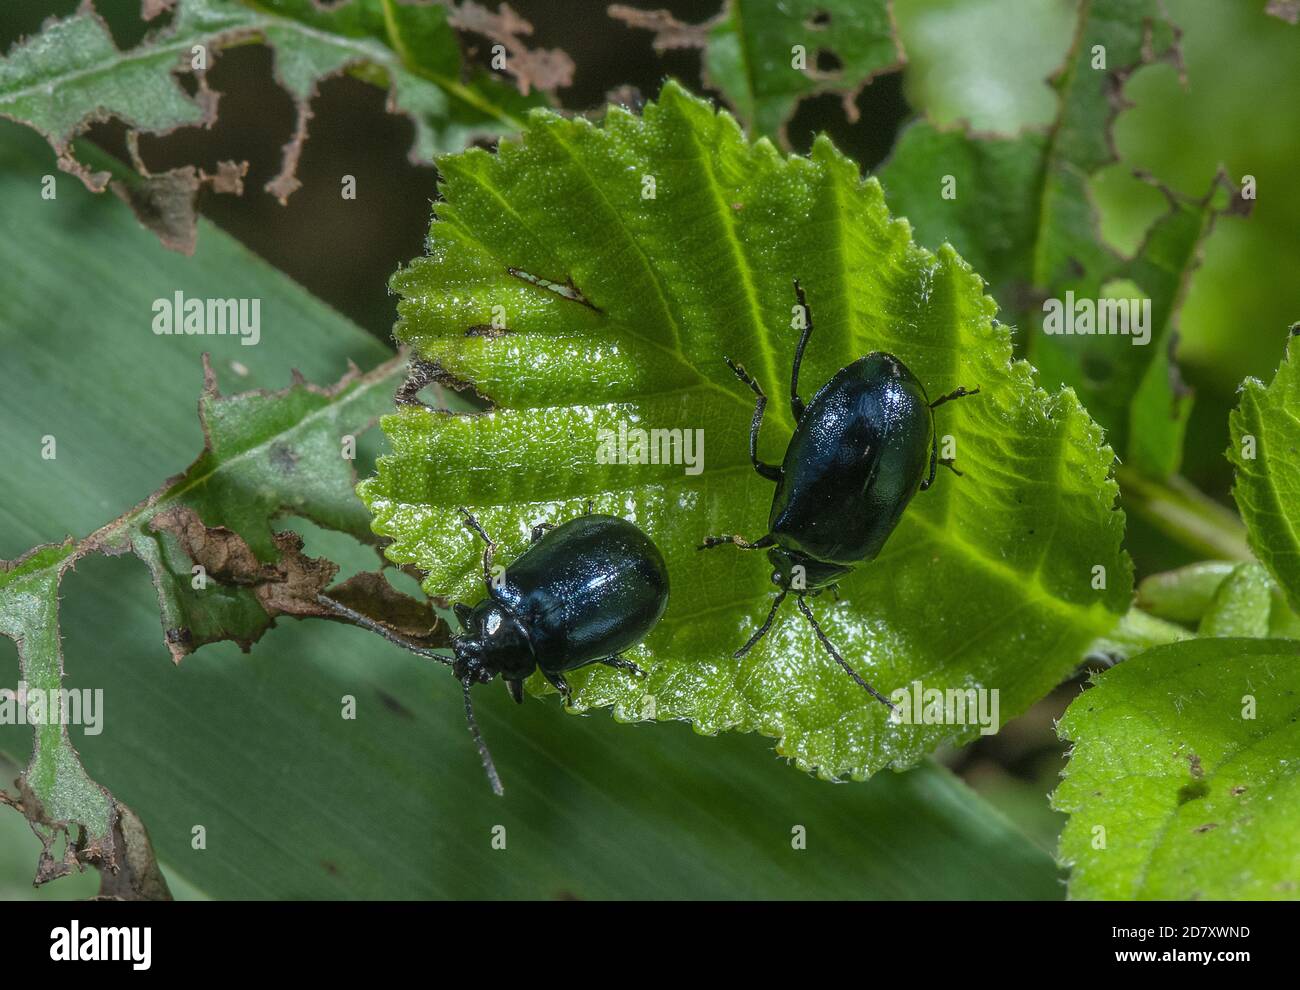 Alder leaf beetles, Agelastica alni,  on the leaves of Alder, Alnus glutinosa. Stock Photo